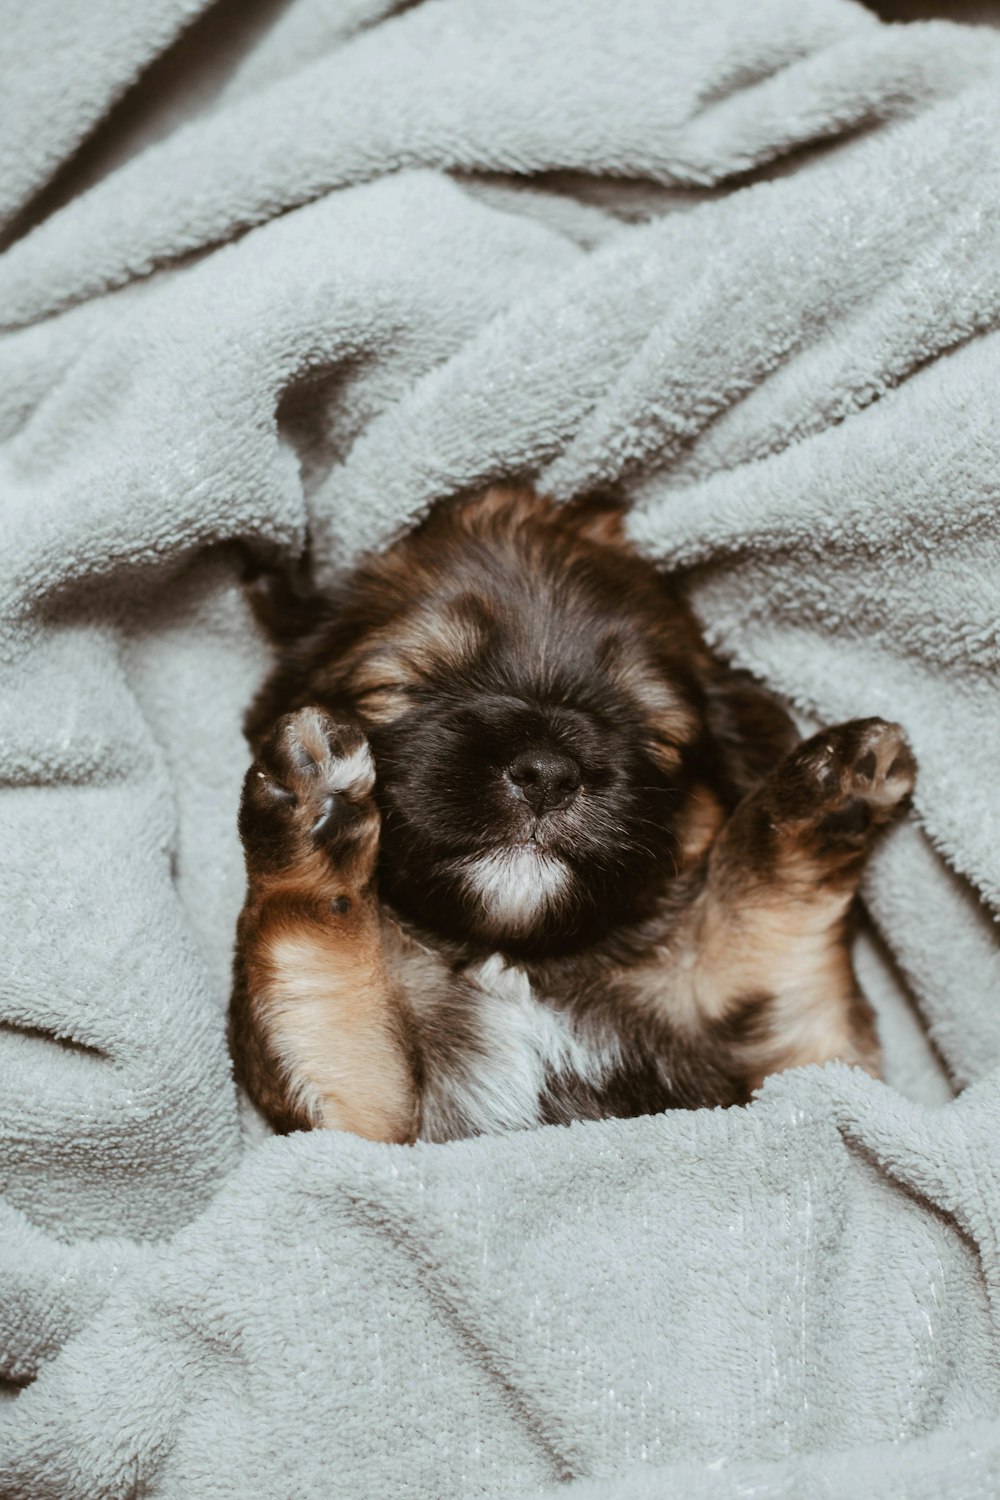 German shepherd puppy sleeping photo – Free Blanket Image on Unsplash skloništu